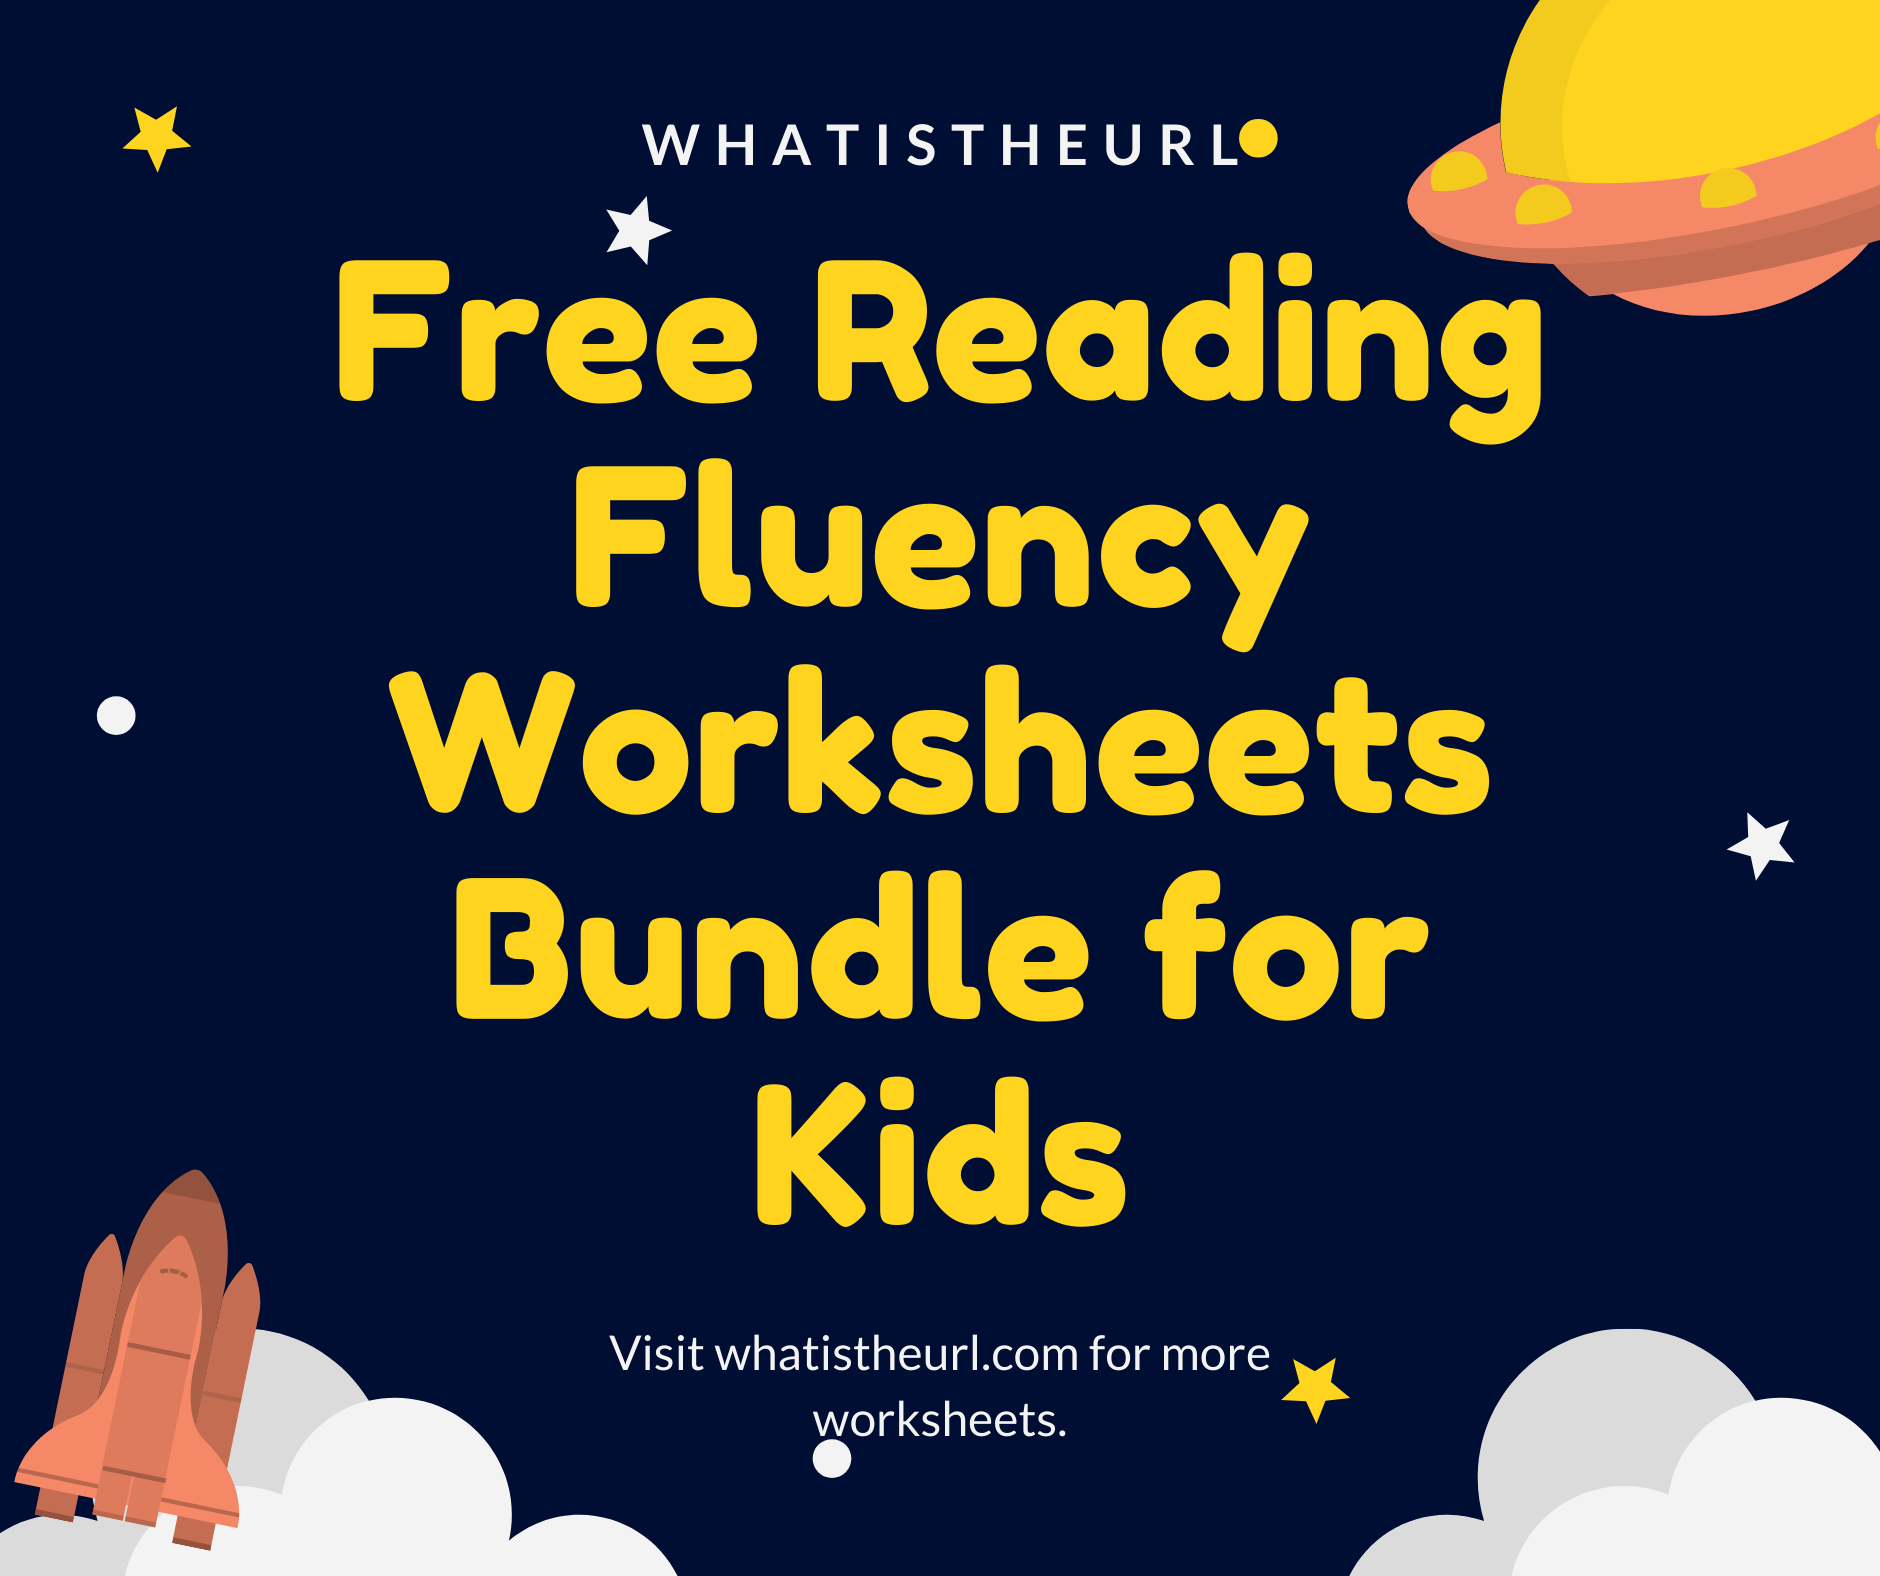 Free Reading Fluency Worksheets Bundle for Kids